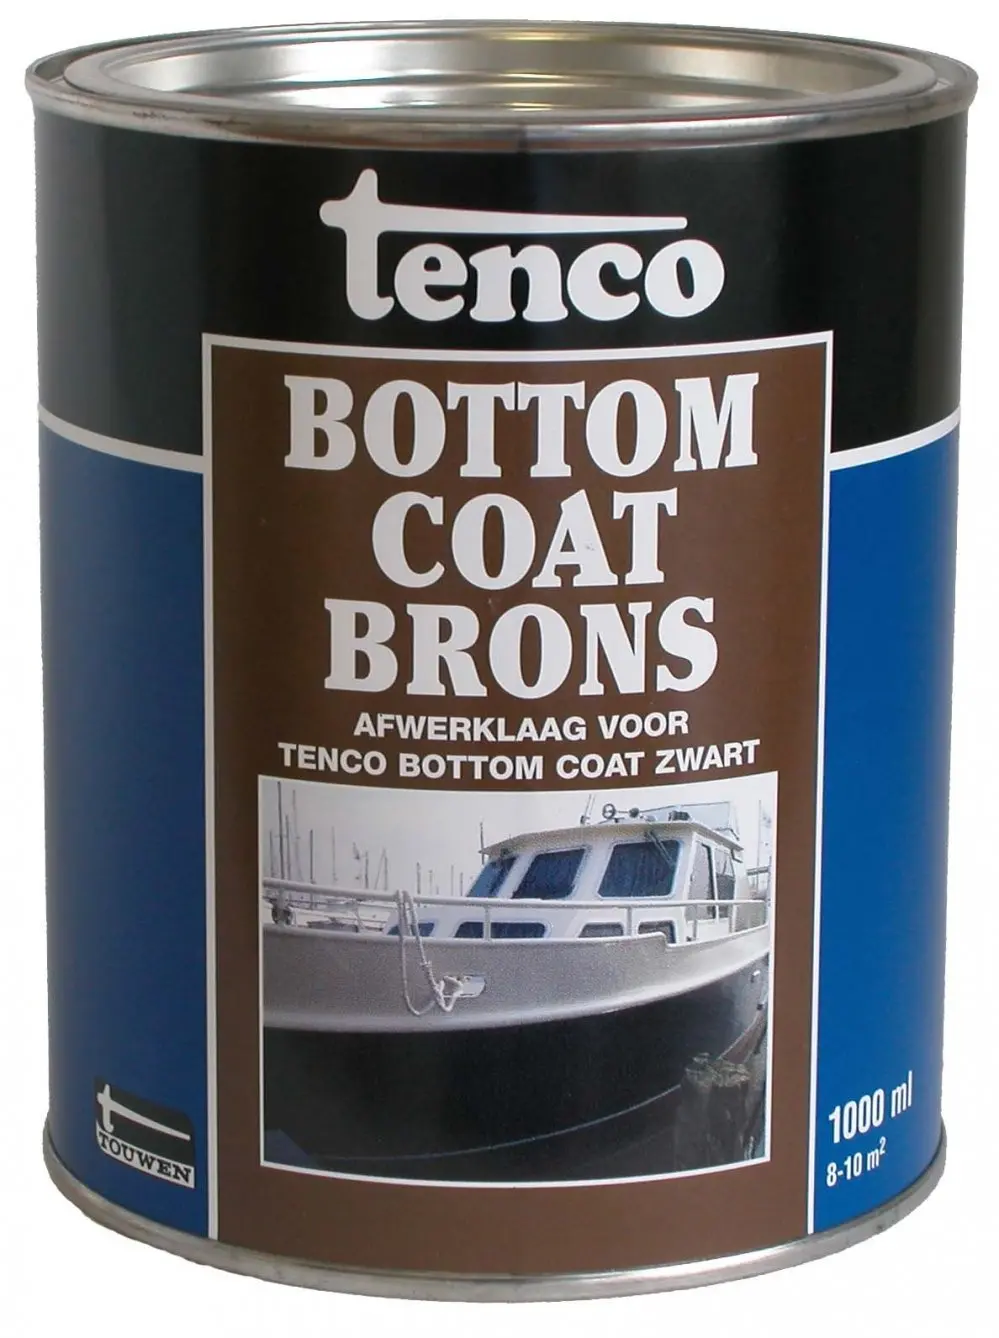 Tenco Boot onderhoud - tenco-bottomcoat-brons-1ltr-verfcompleet.nl